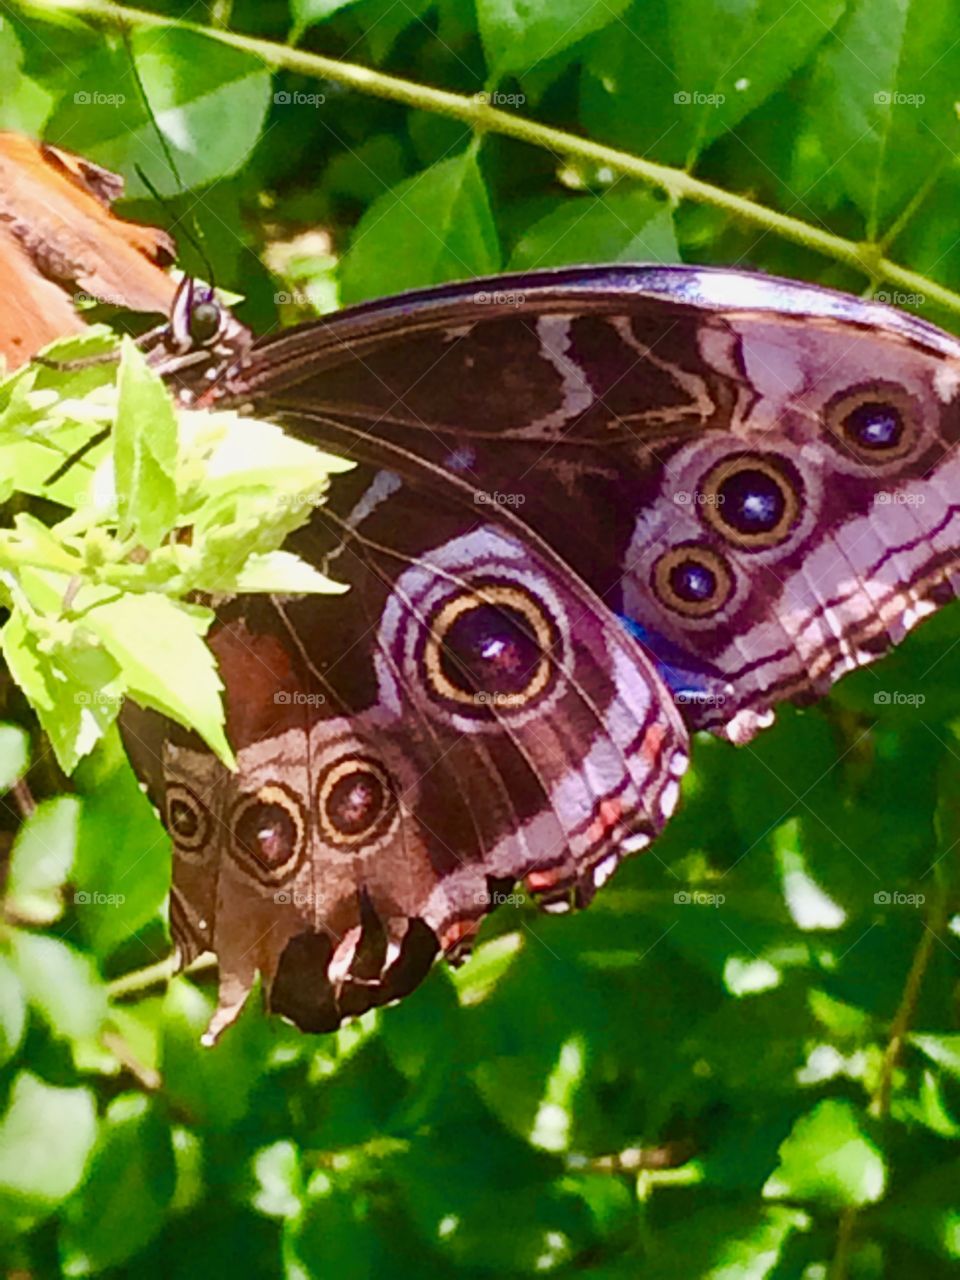 A butterfly closeup